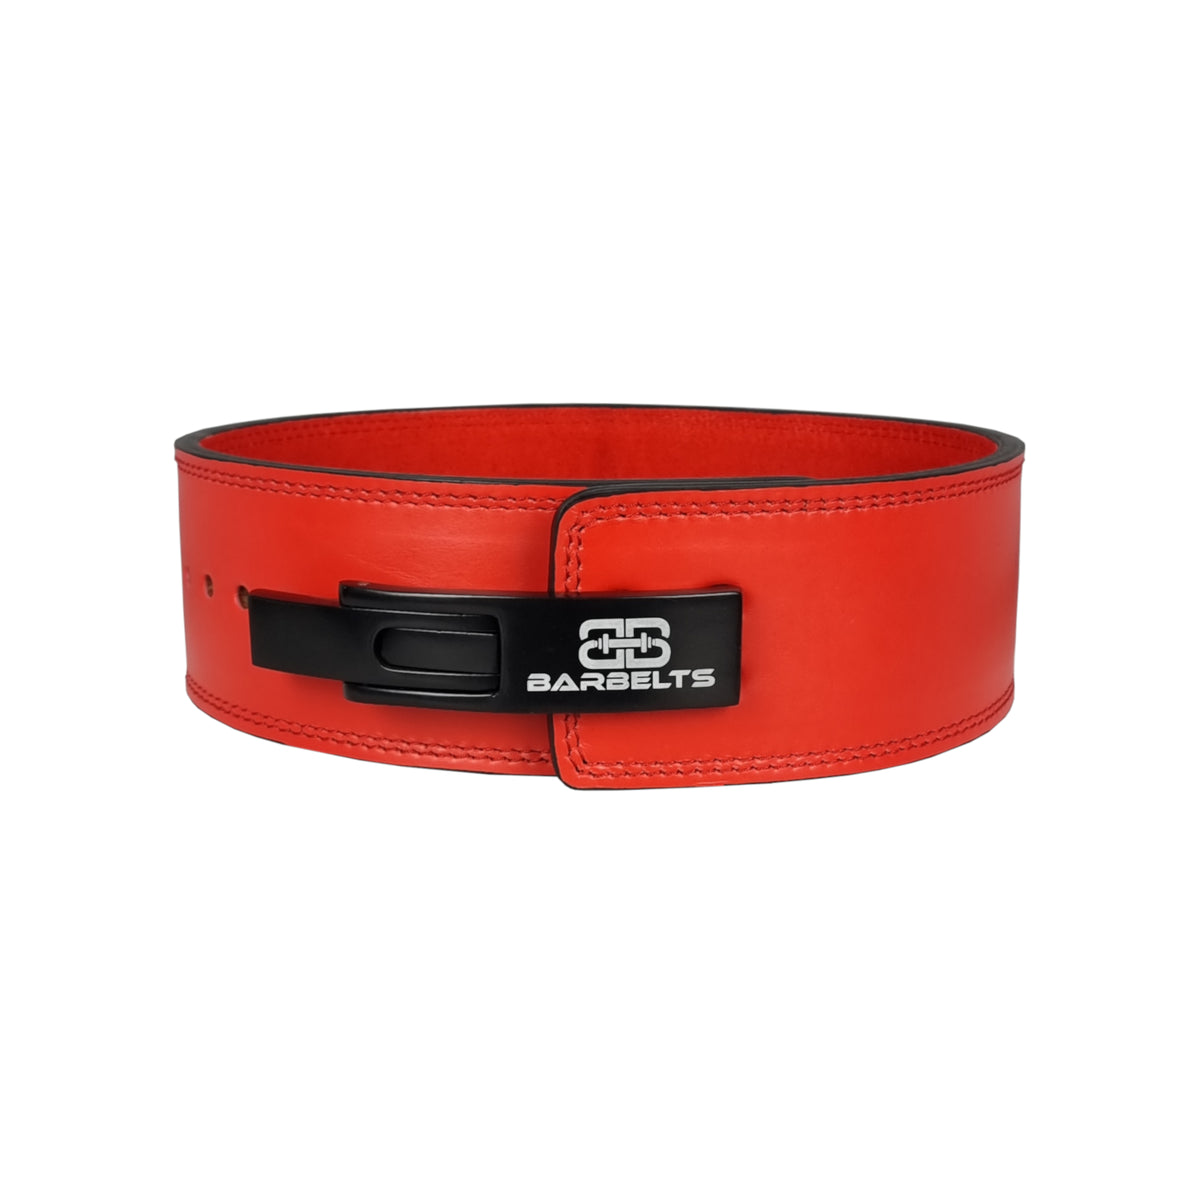 Barbelts lever belt - true red 10mm | Official Online Shop